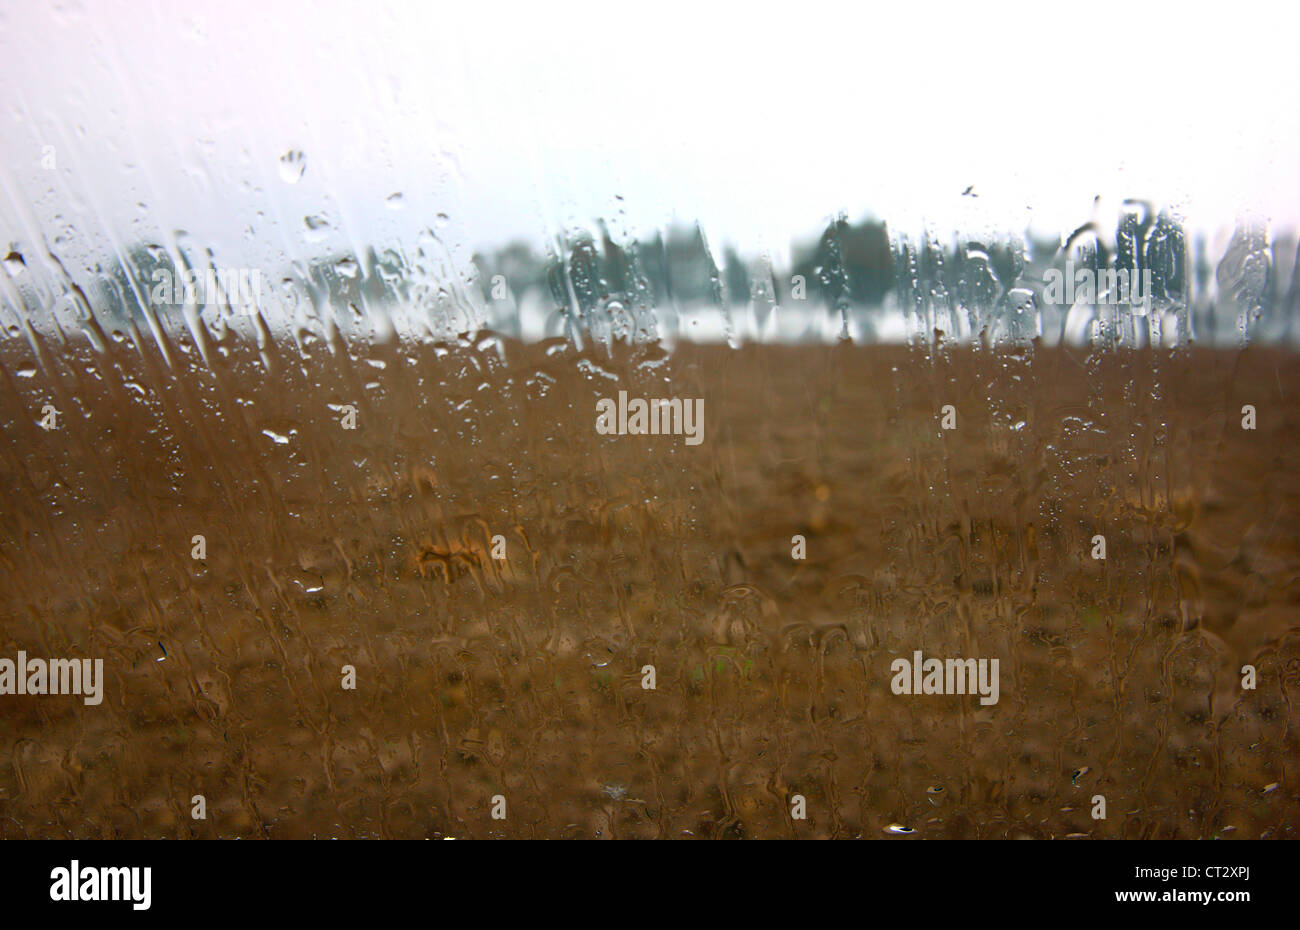 Día lluvioso, las gotas de lluvia corriendo por un viento. Vista de un terreno fangoso, árboles en la lluvia. Foto de stock